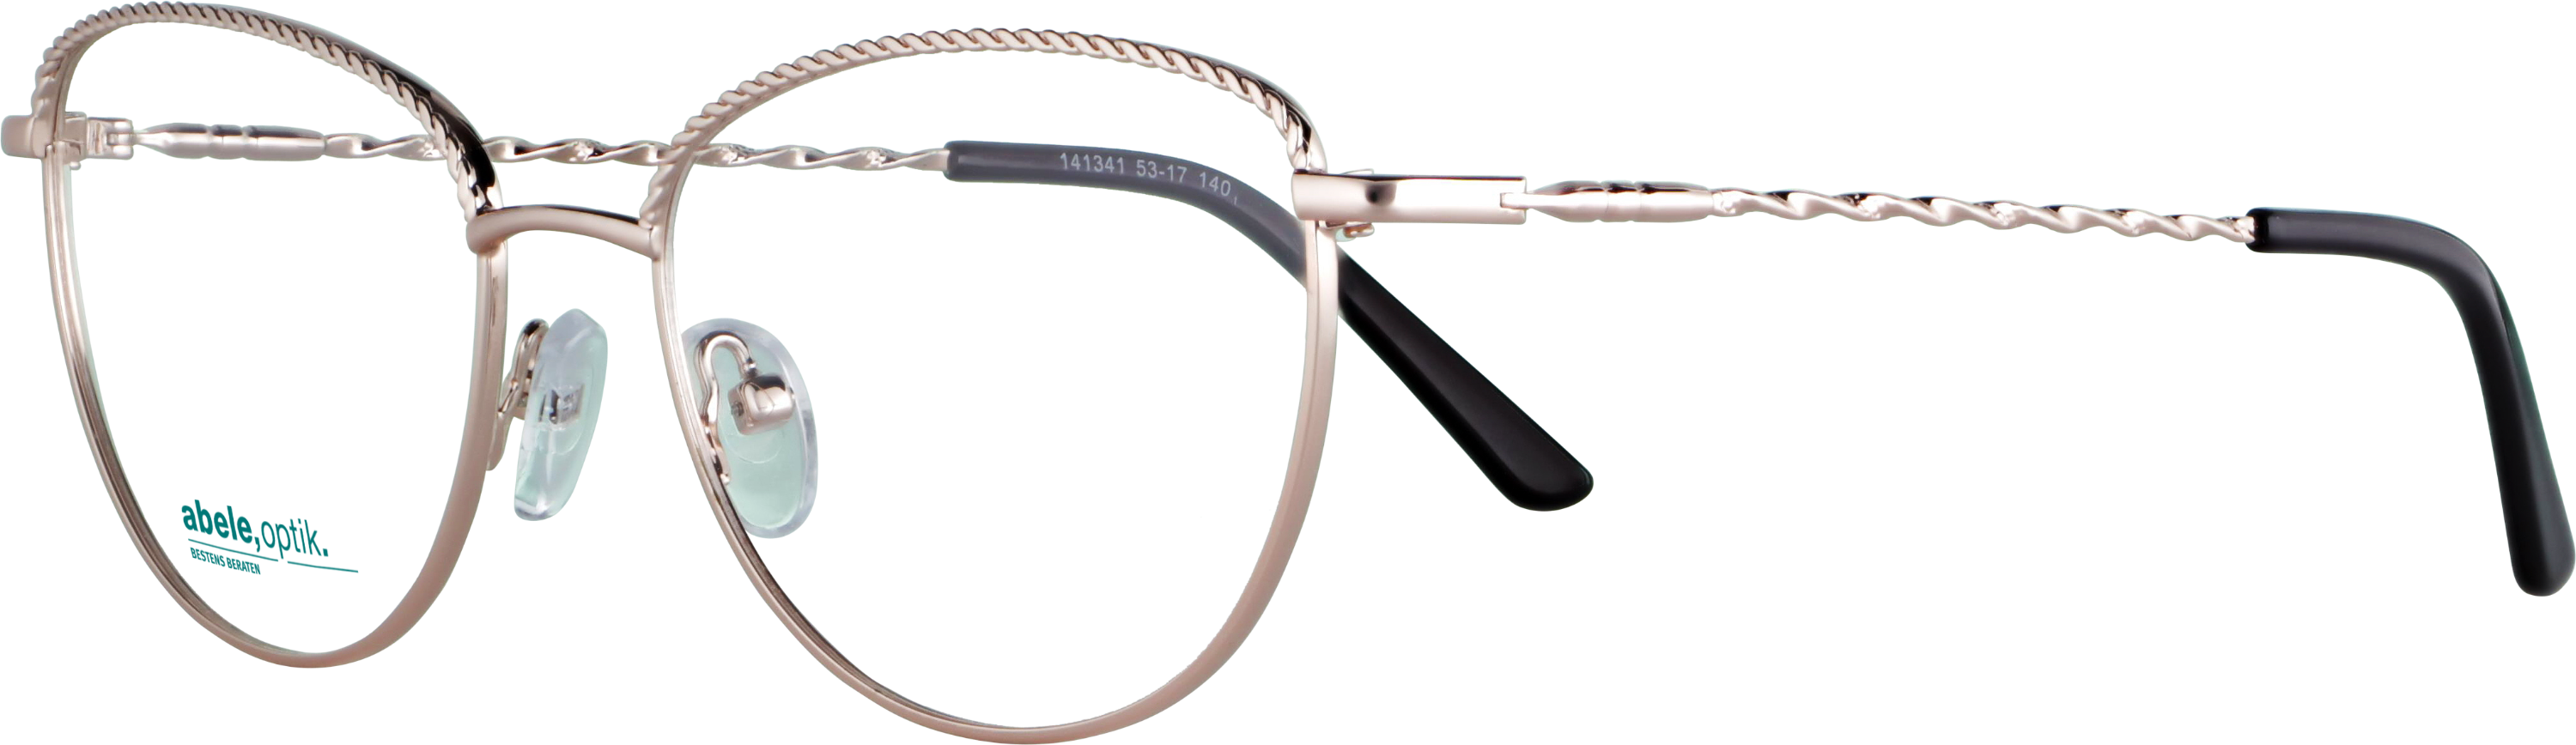 Das Bild zeigt die Korrektionsbrille 141341 von der Marke Abele Optik in roségold.